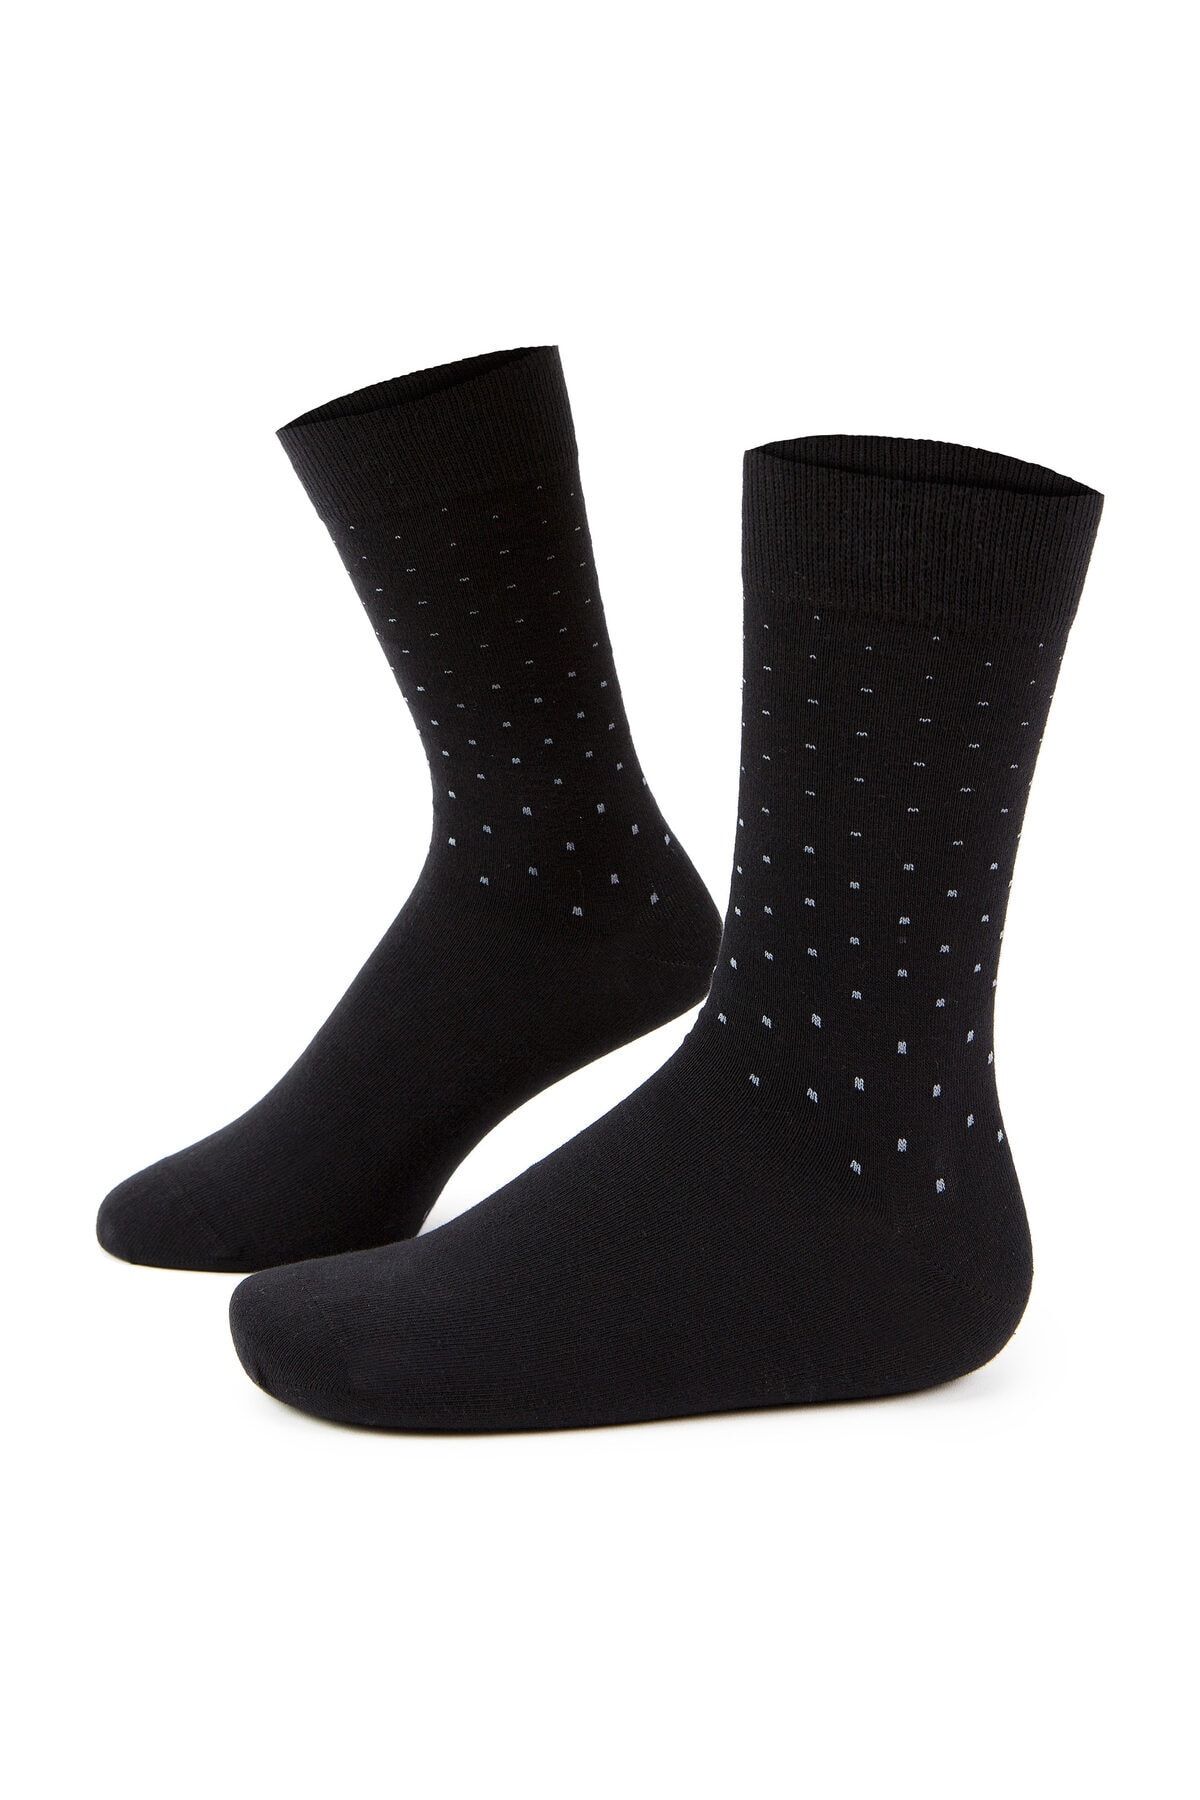 Pierre Cardin Erkek Siyah Çorap